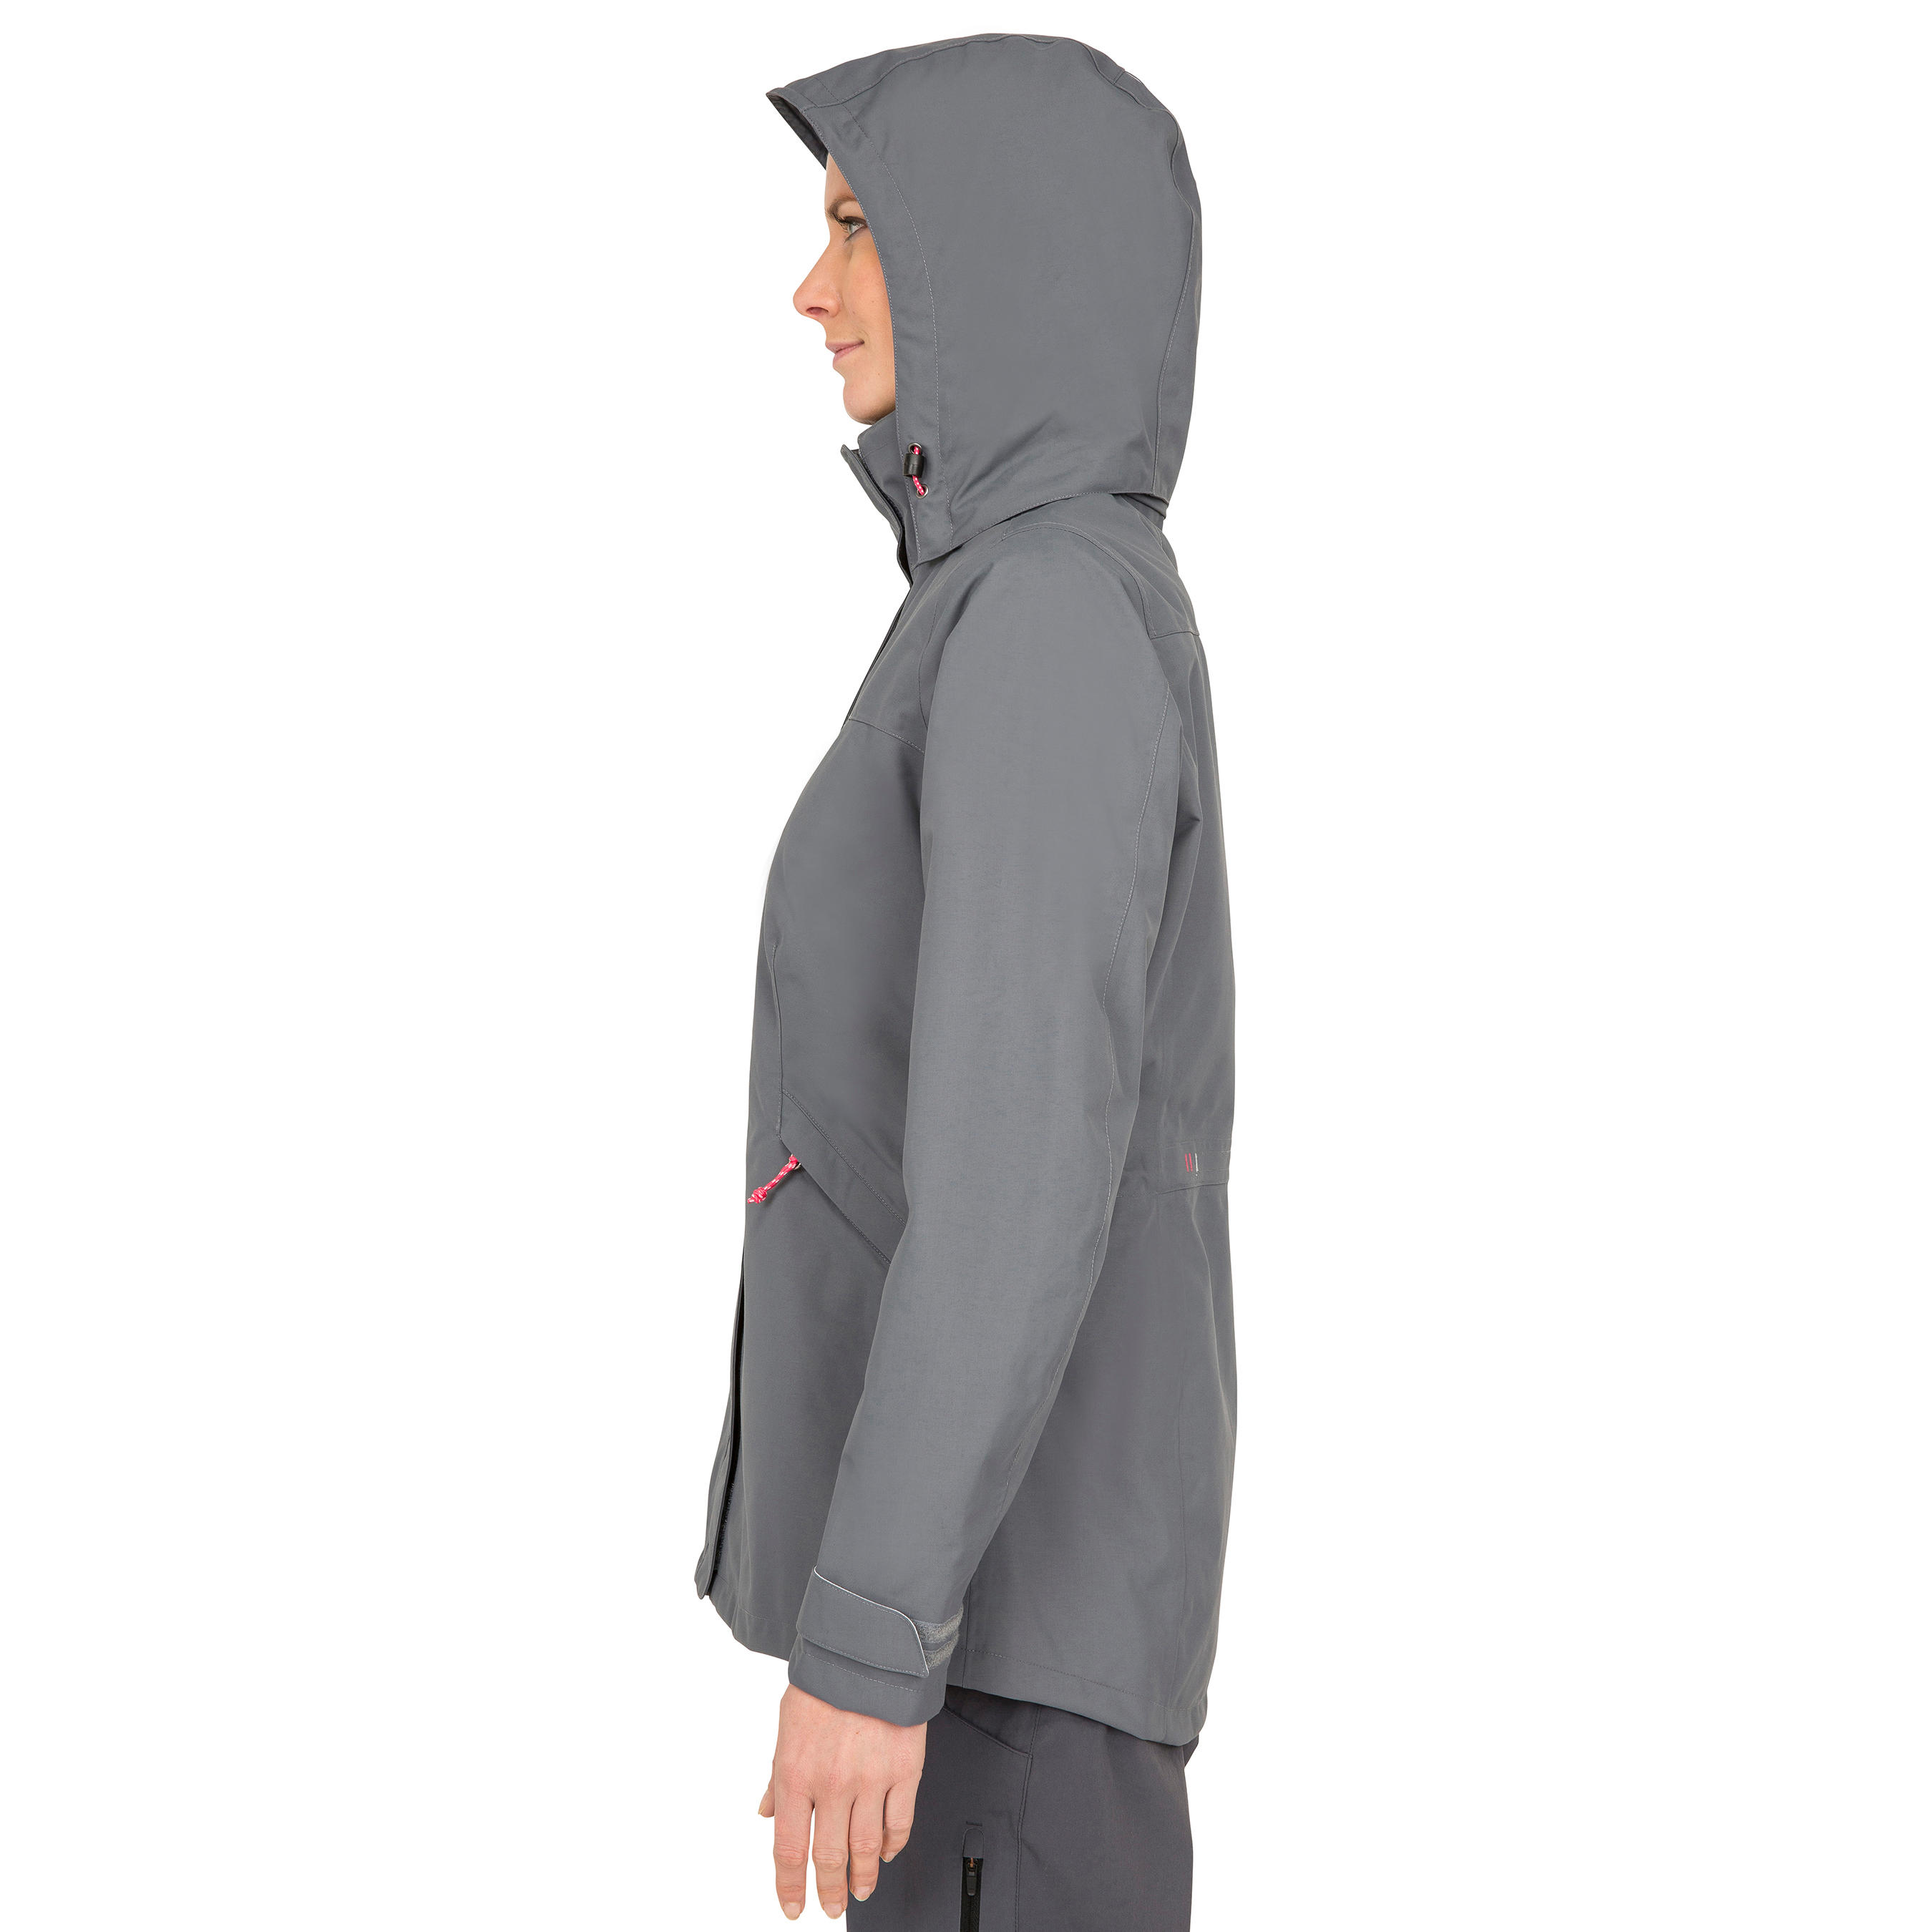 Coastal 100 women's waterproof, windproof, breathable jacket - grey 8/22